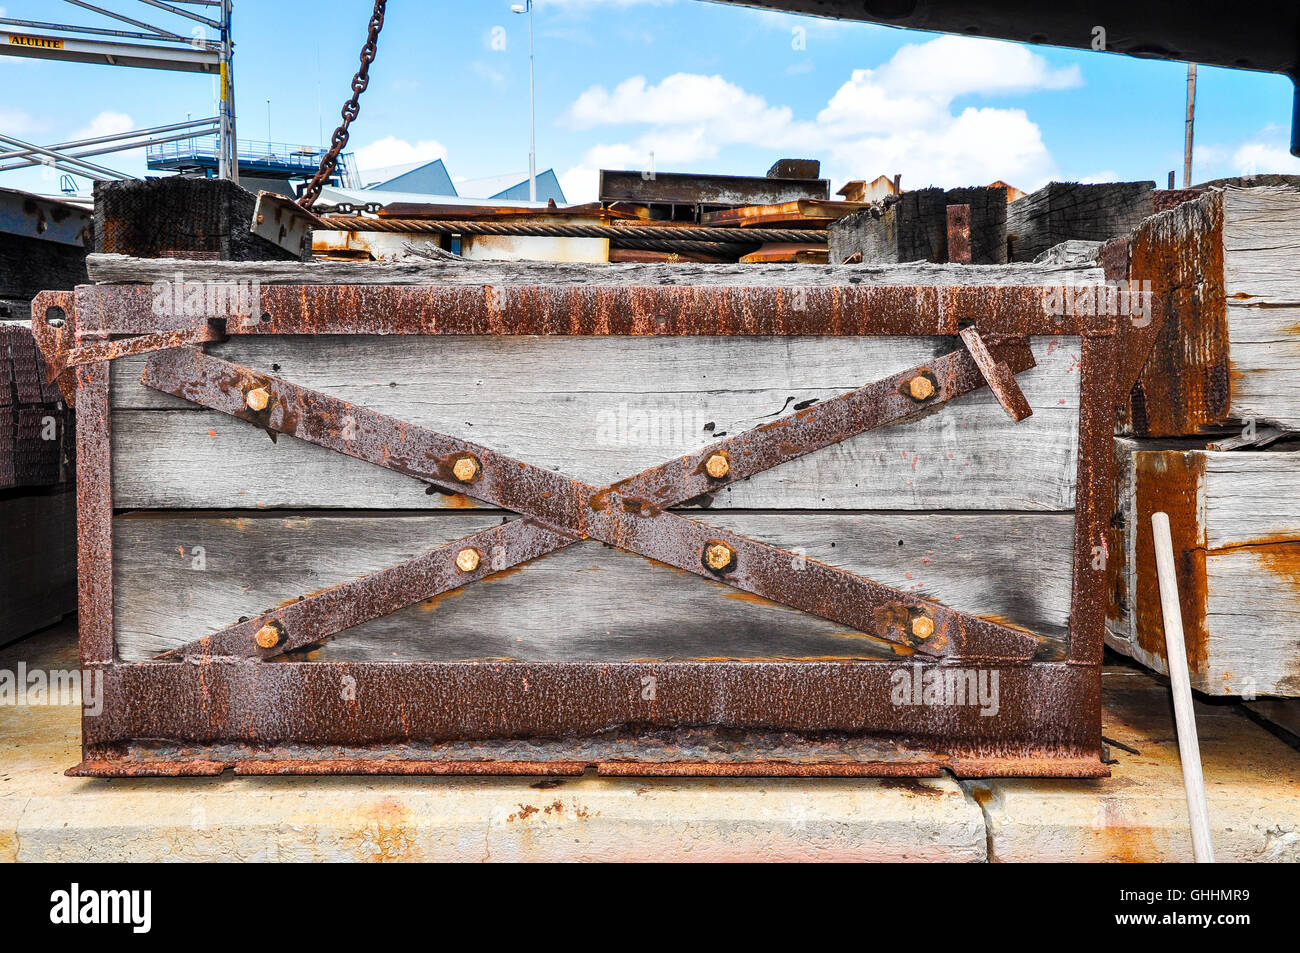 Old Captain's Treasure Chest avec métaux rouillés et jeu de construction en bois rustique en plein air dans le port d'expédition sous un ciel bleu. Banque D'Images